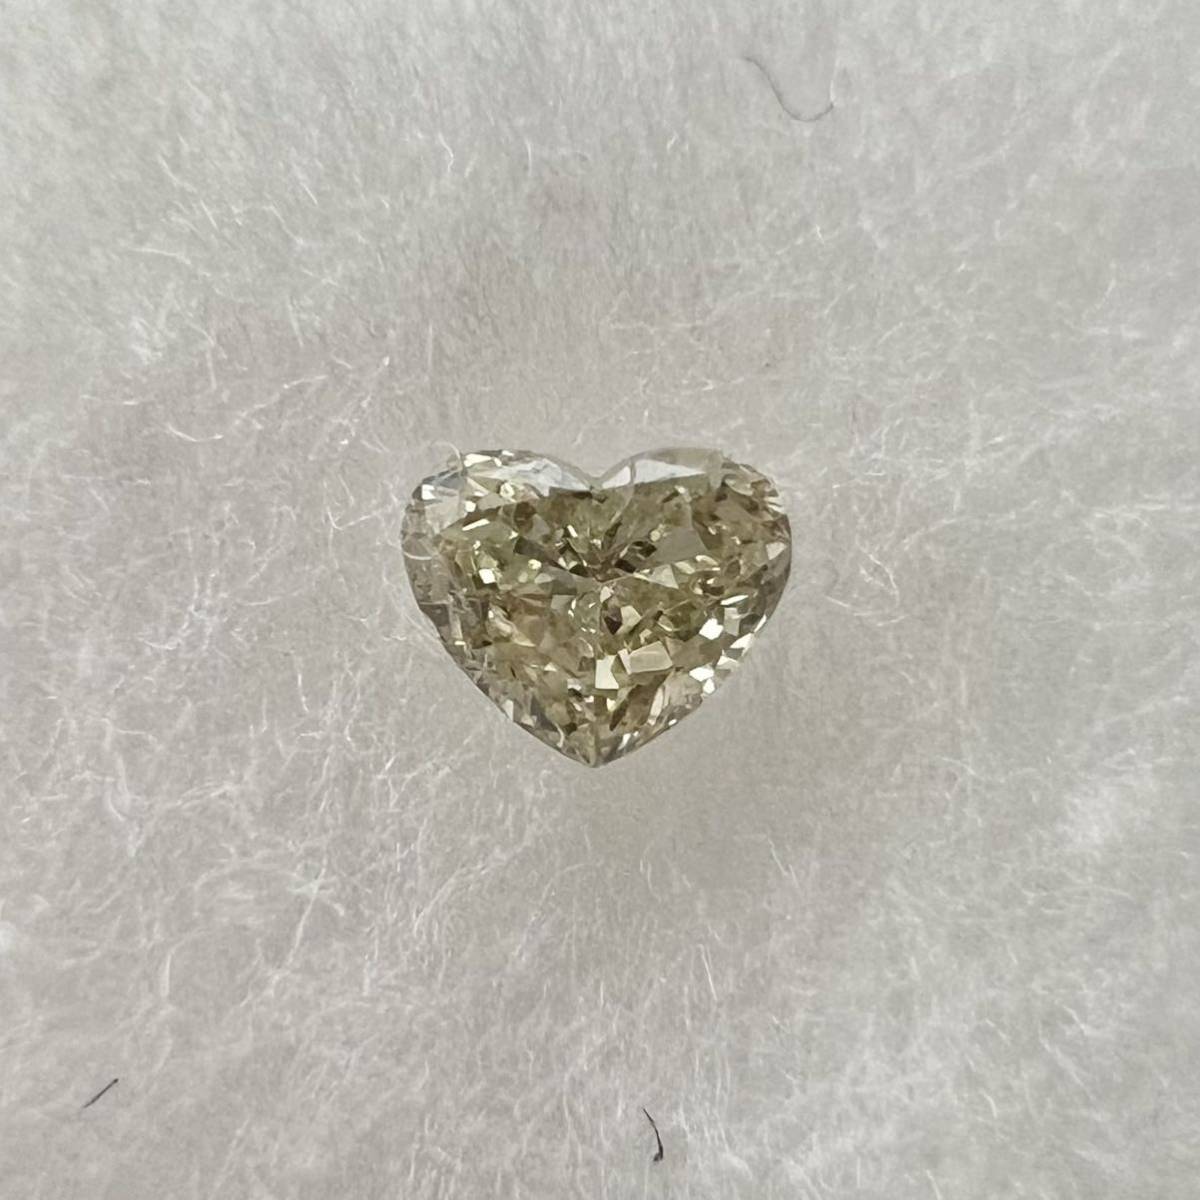 ハートシェイプ イエロー ダイヤモンド ルース 蛍光ダイヤの画像1